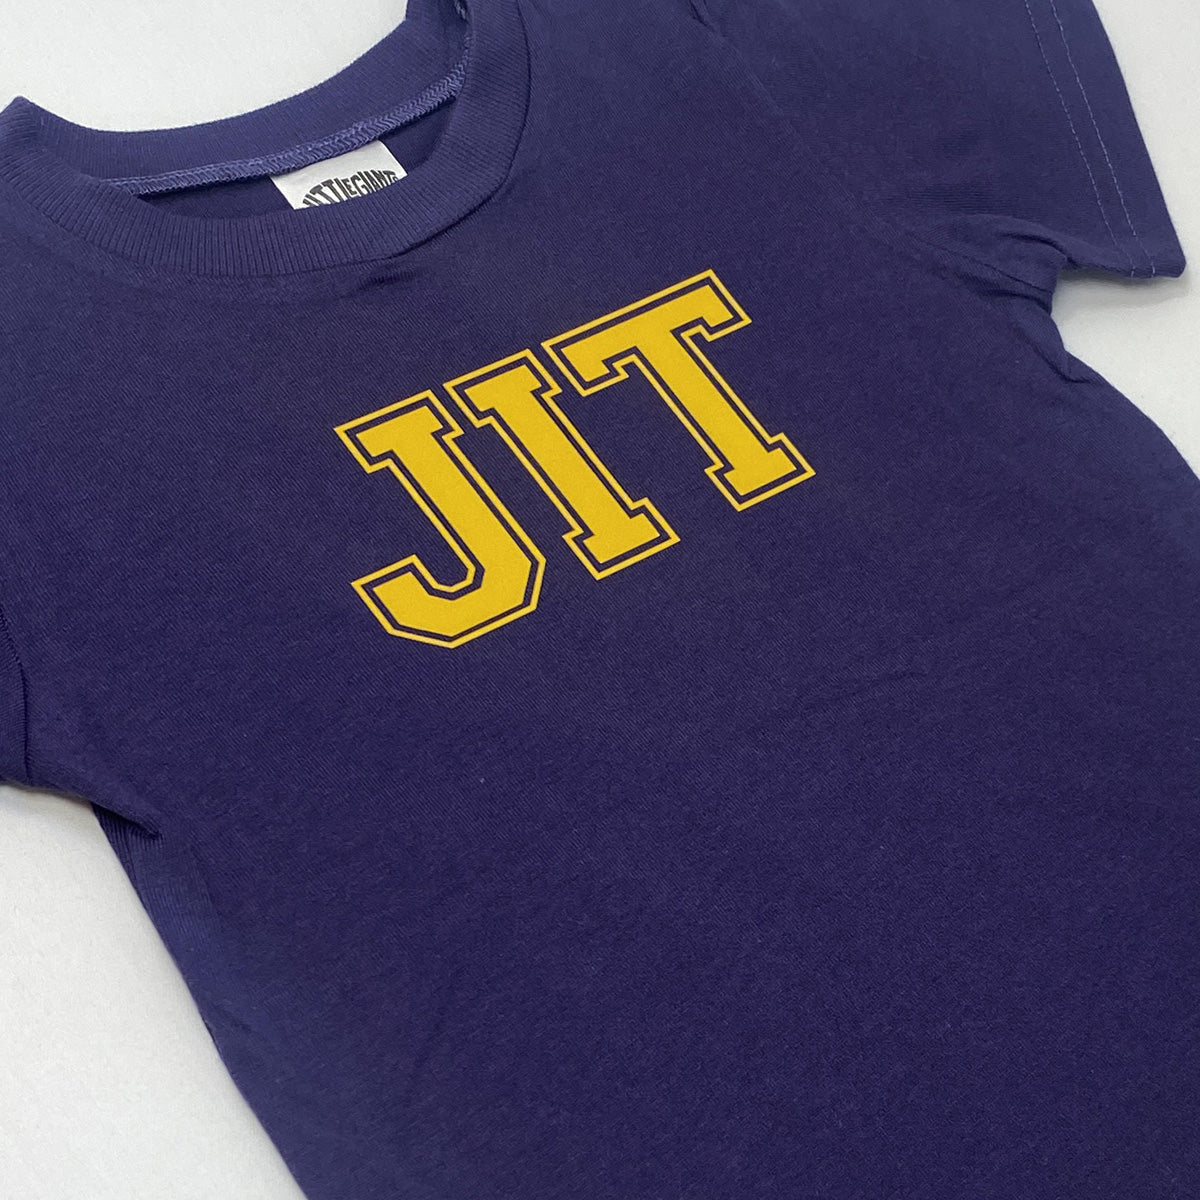 Le' JIT T-shirt (Grape)